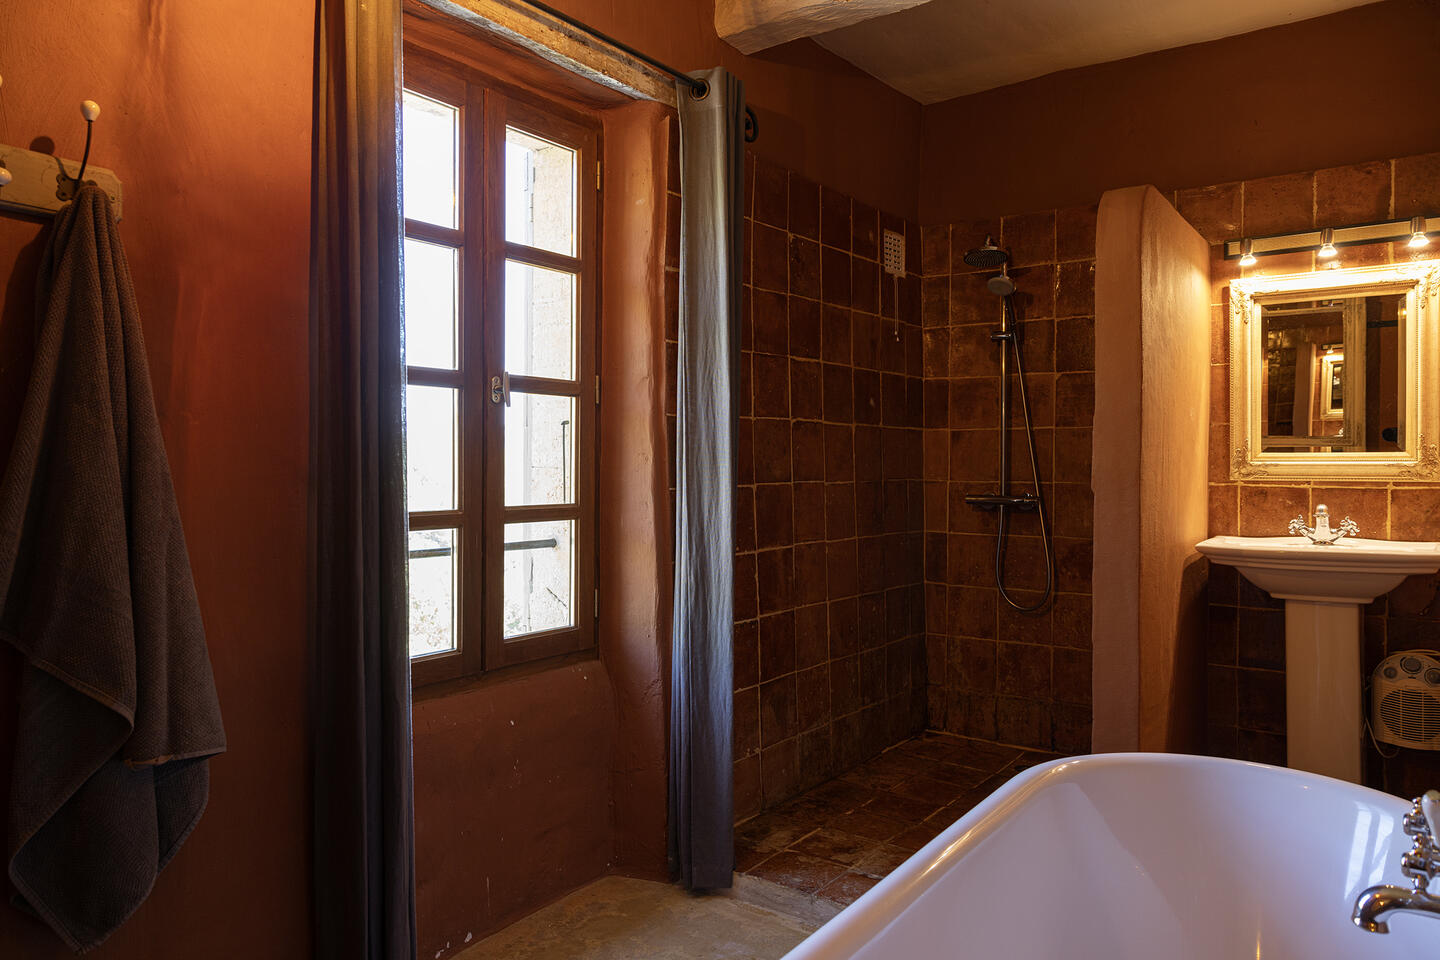 39 - Combe des Fougères: Villa: Bathroom